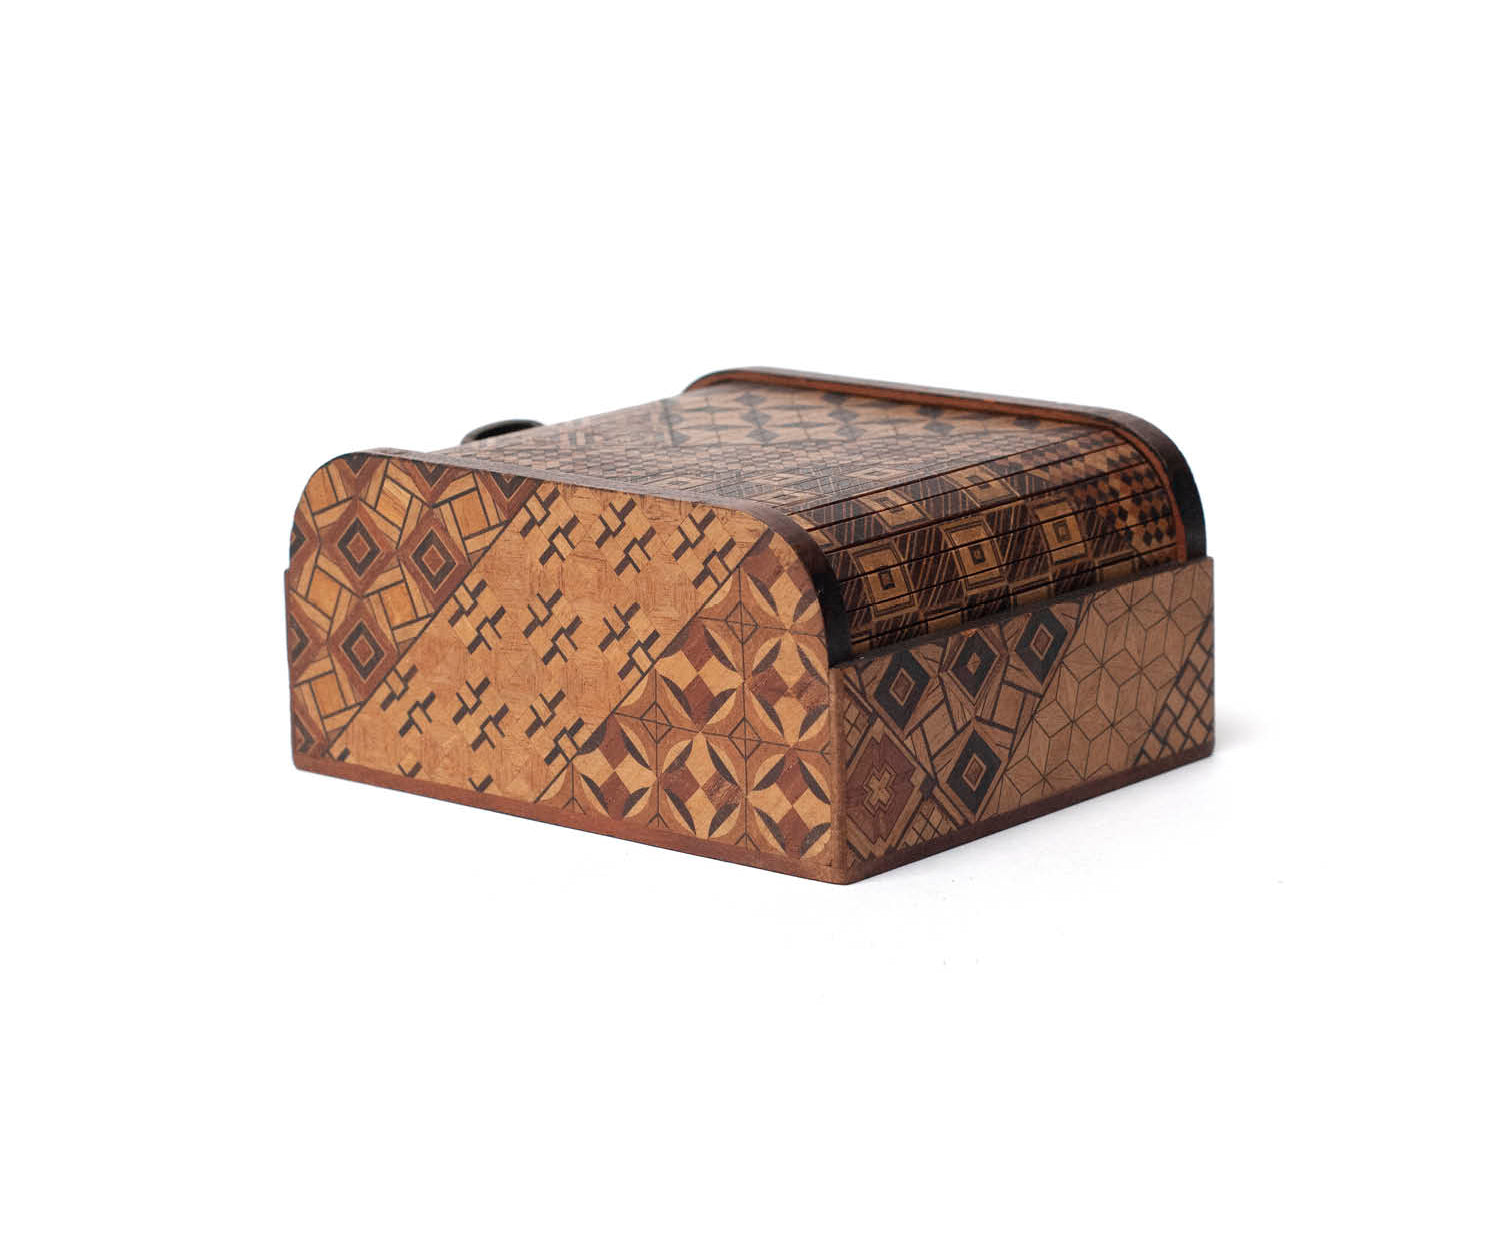 Vintage Object : Yosegi Box | LIKE THIS SHOP